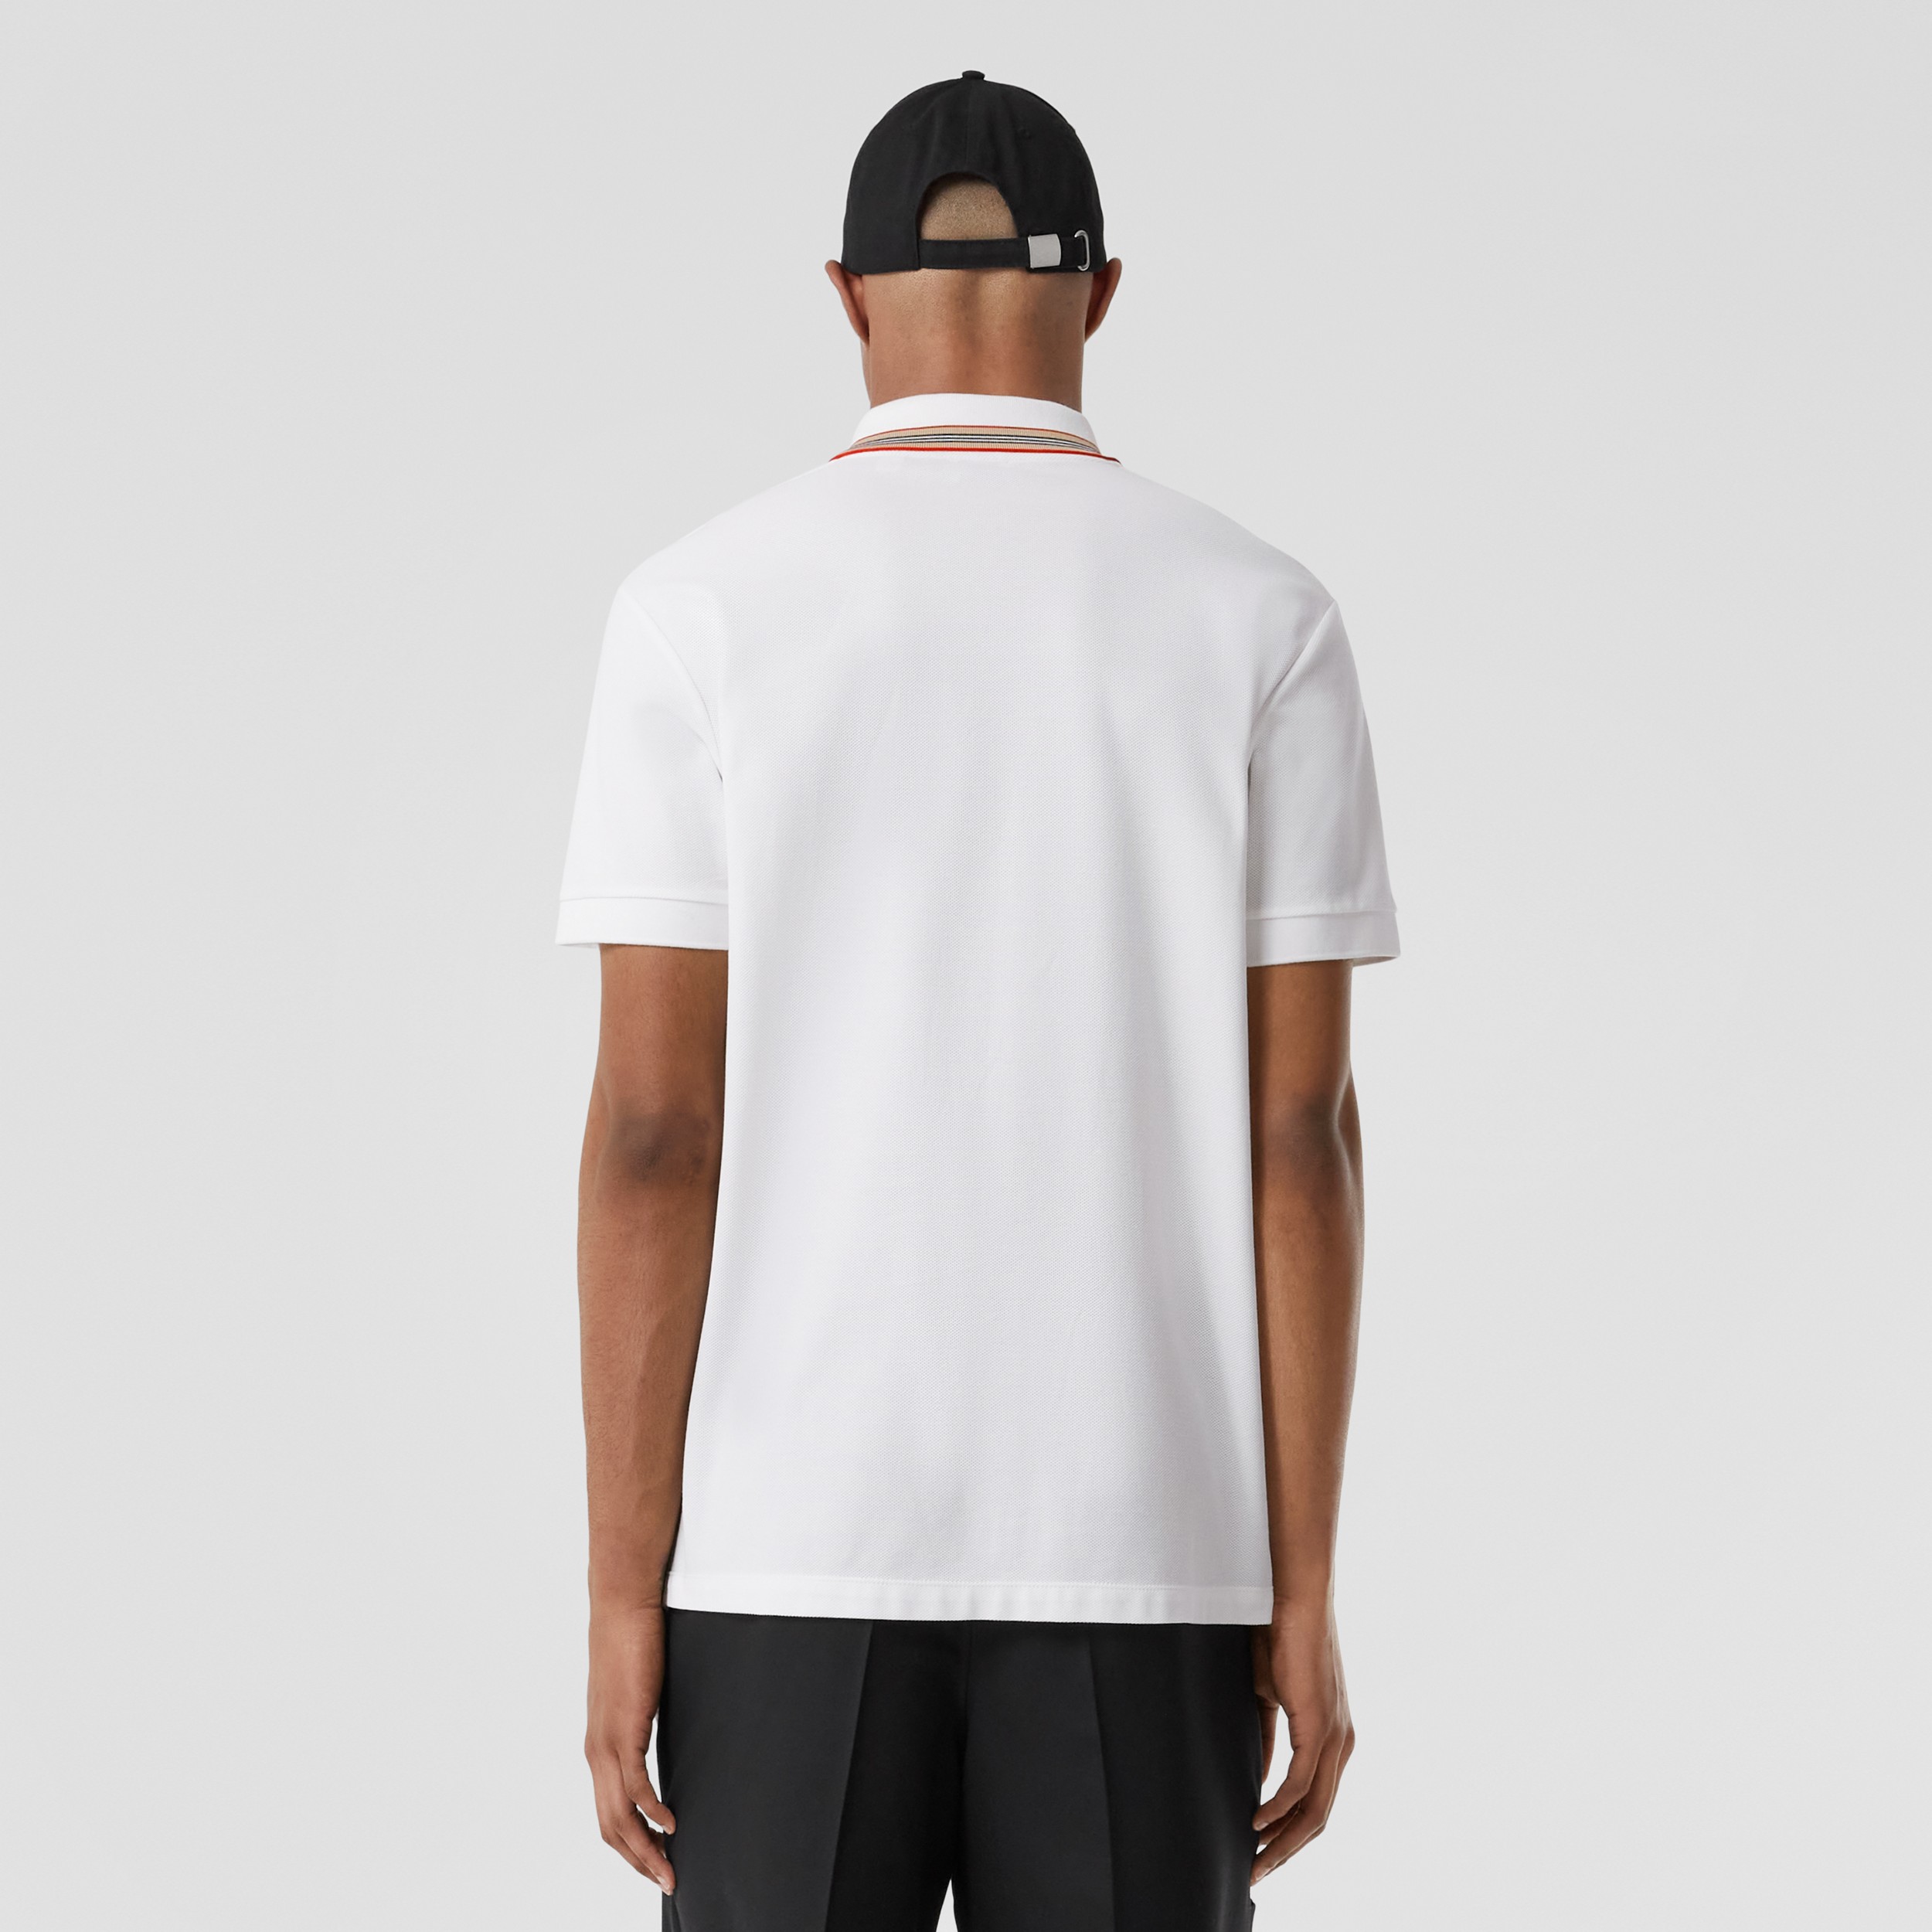 Baumwoll-Poloshirt mit Kragen im Streifendesign (Weiß) - Herren | Burberry® - 3